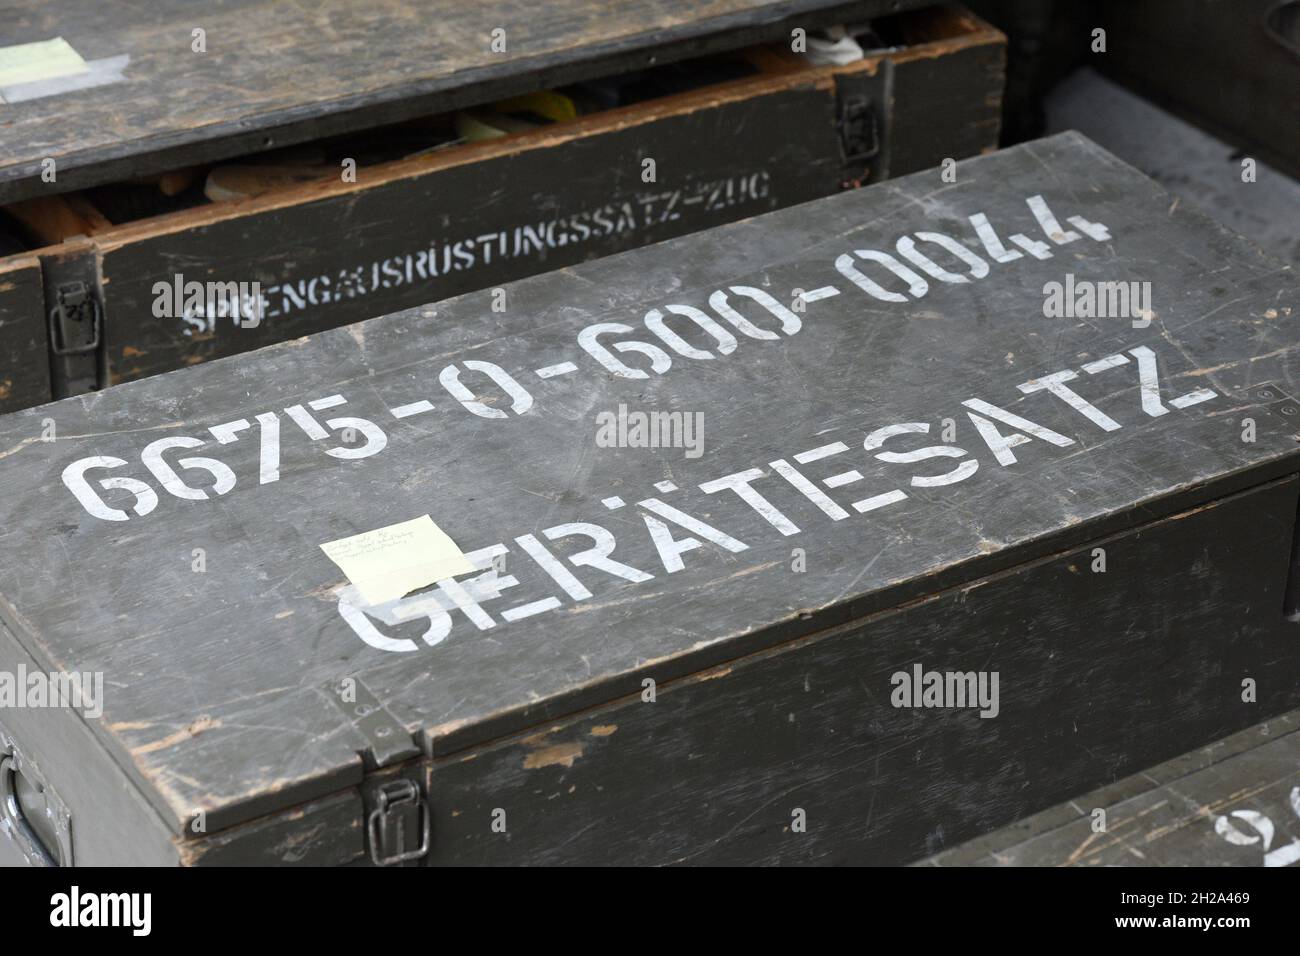 Kisten für Sprengausrüstung des österreichischen Bundesheeres, Österreich, Europa - scatole per l'attrezzatura di brillamento delle forze armate austriache, Austria Foto Stock